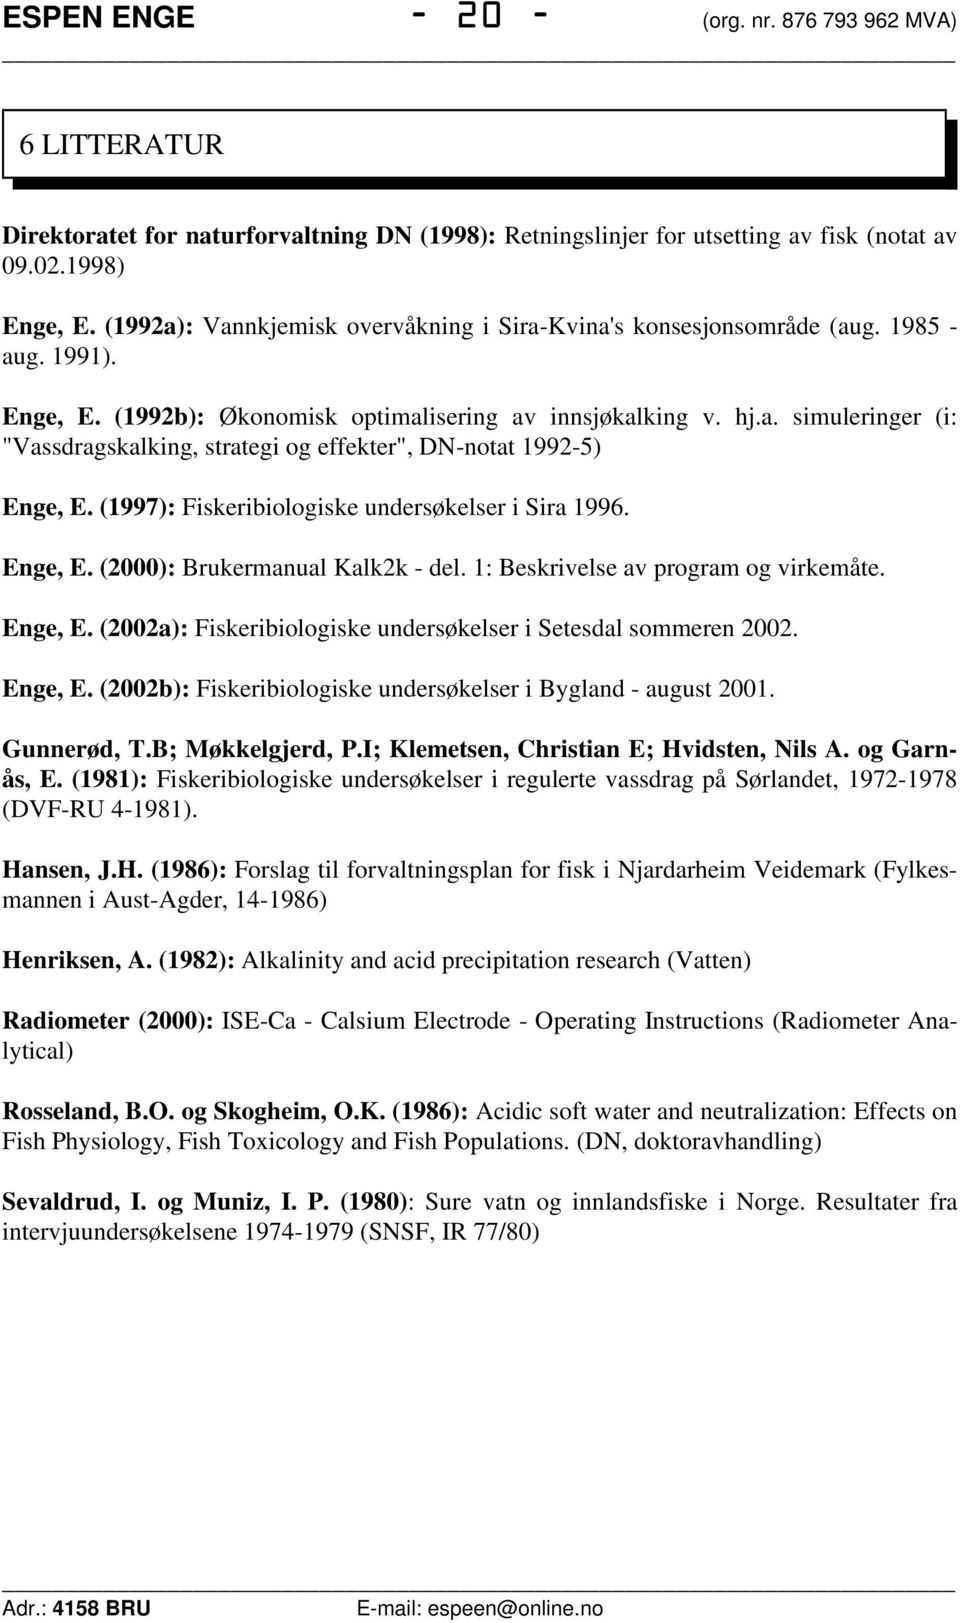 (1997): Fiskeribiologiske undersøkelser i Sira 1996. Enge, E. (2000): Brukermanual Kalk2k - del. 1: Beskrivelse av program og virkemåte. Enge, E. (2002a): Fiskeribiologiske undersøkelser i Setesdal sommeren 2002.